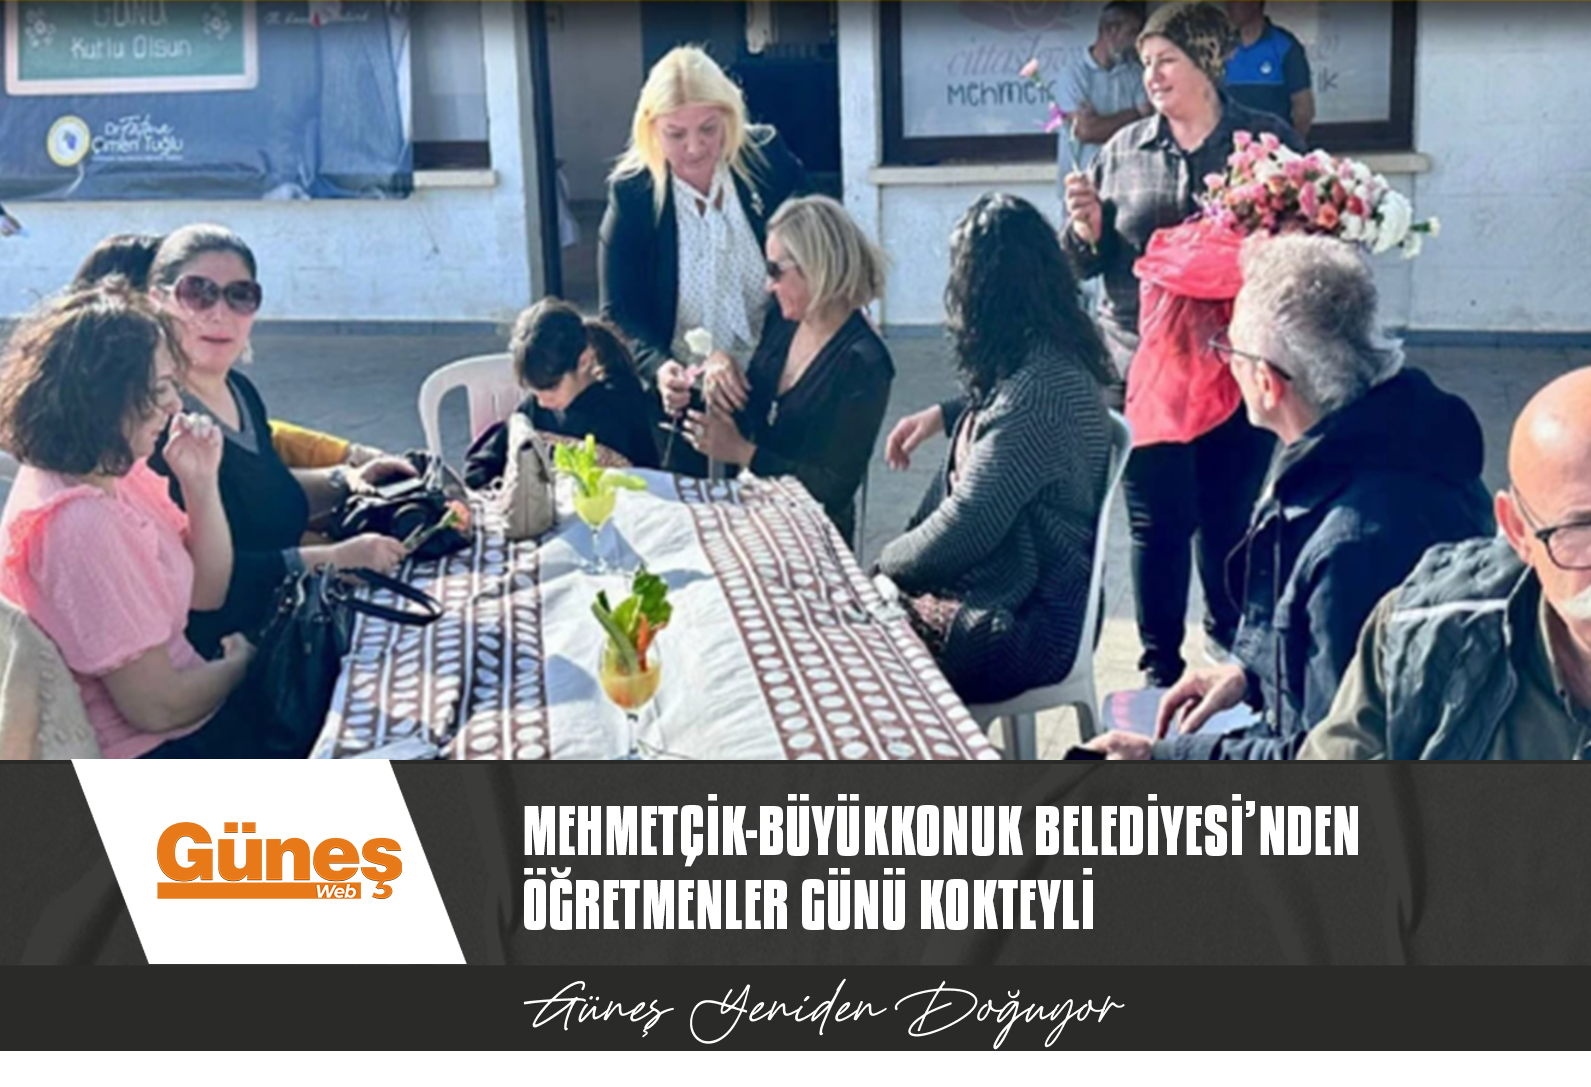 Mehmetçik-Büyükkonuk Belediyesi, Öğretmenler Günü kokteyli düzenledi